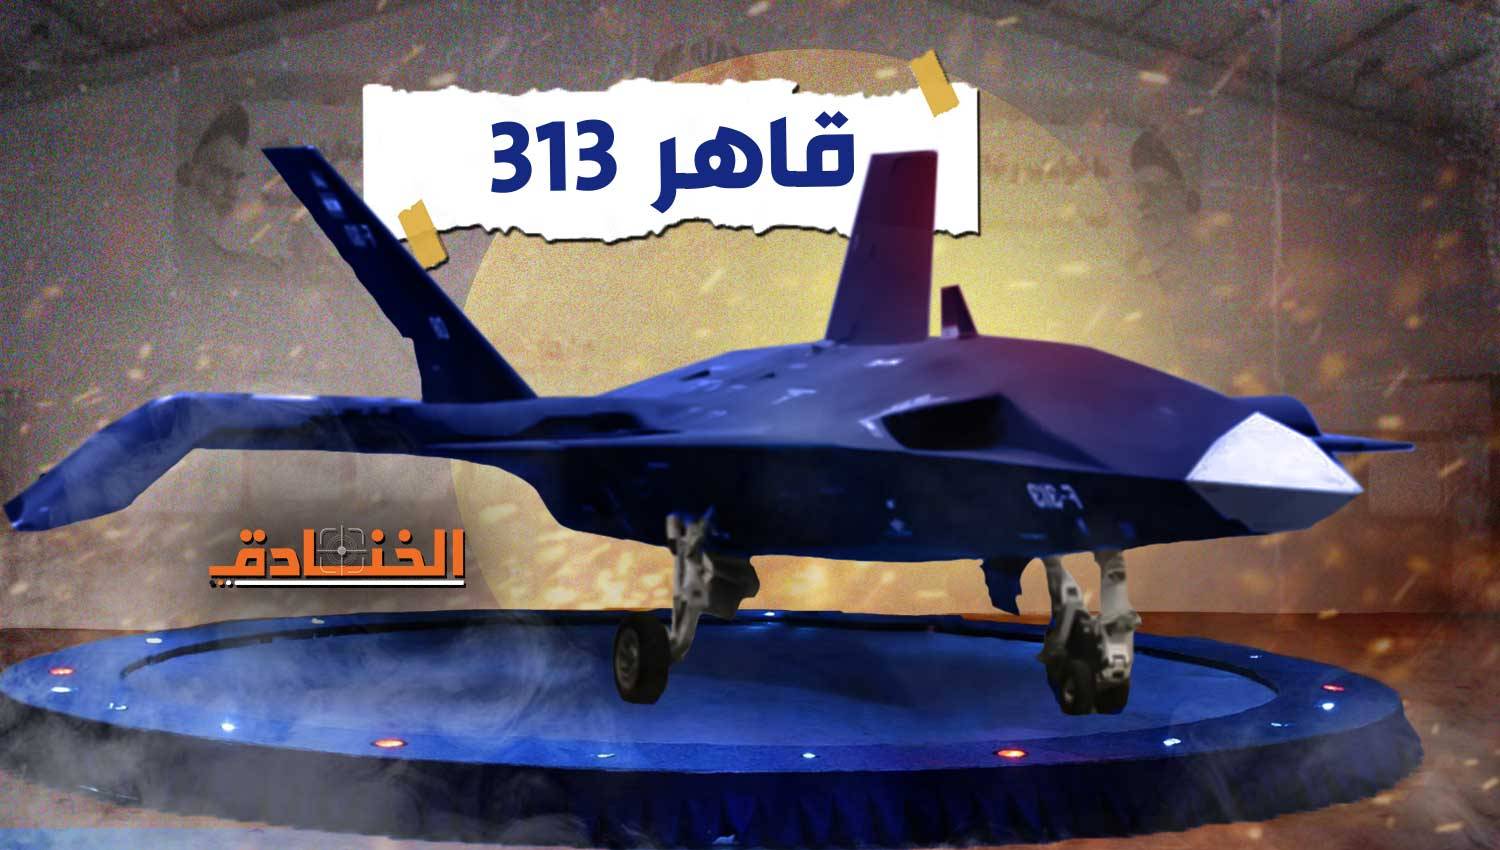 قريباً: طائرة قاهر 313 بدون طيّار